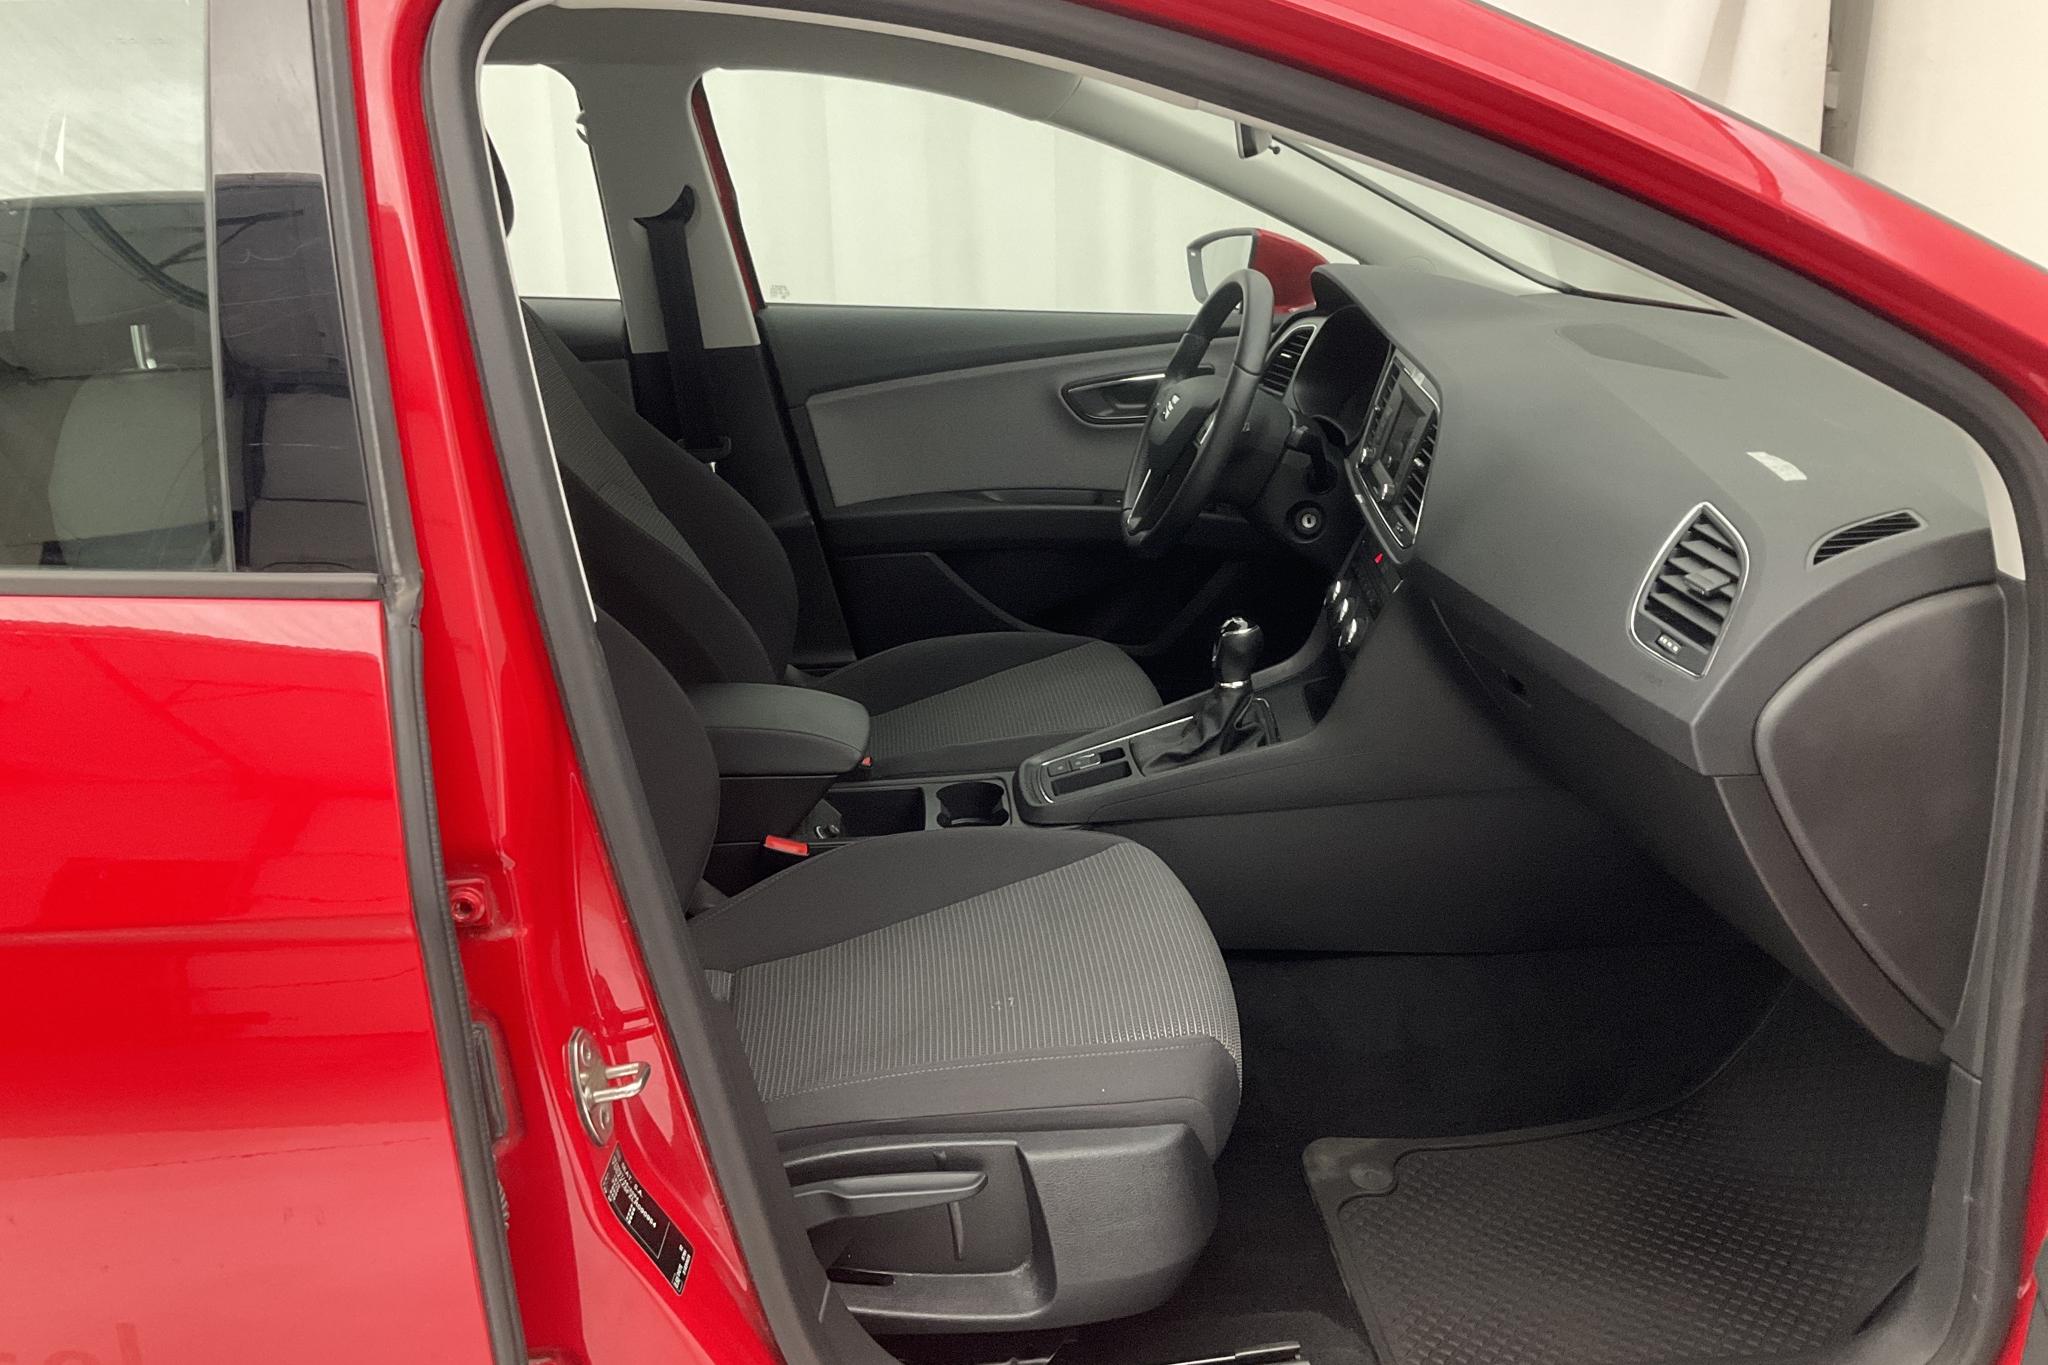 Seat Leon 1.6 TDI 5dr (115hk) - 2 400 mil - Manuell - röd - 2020